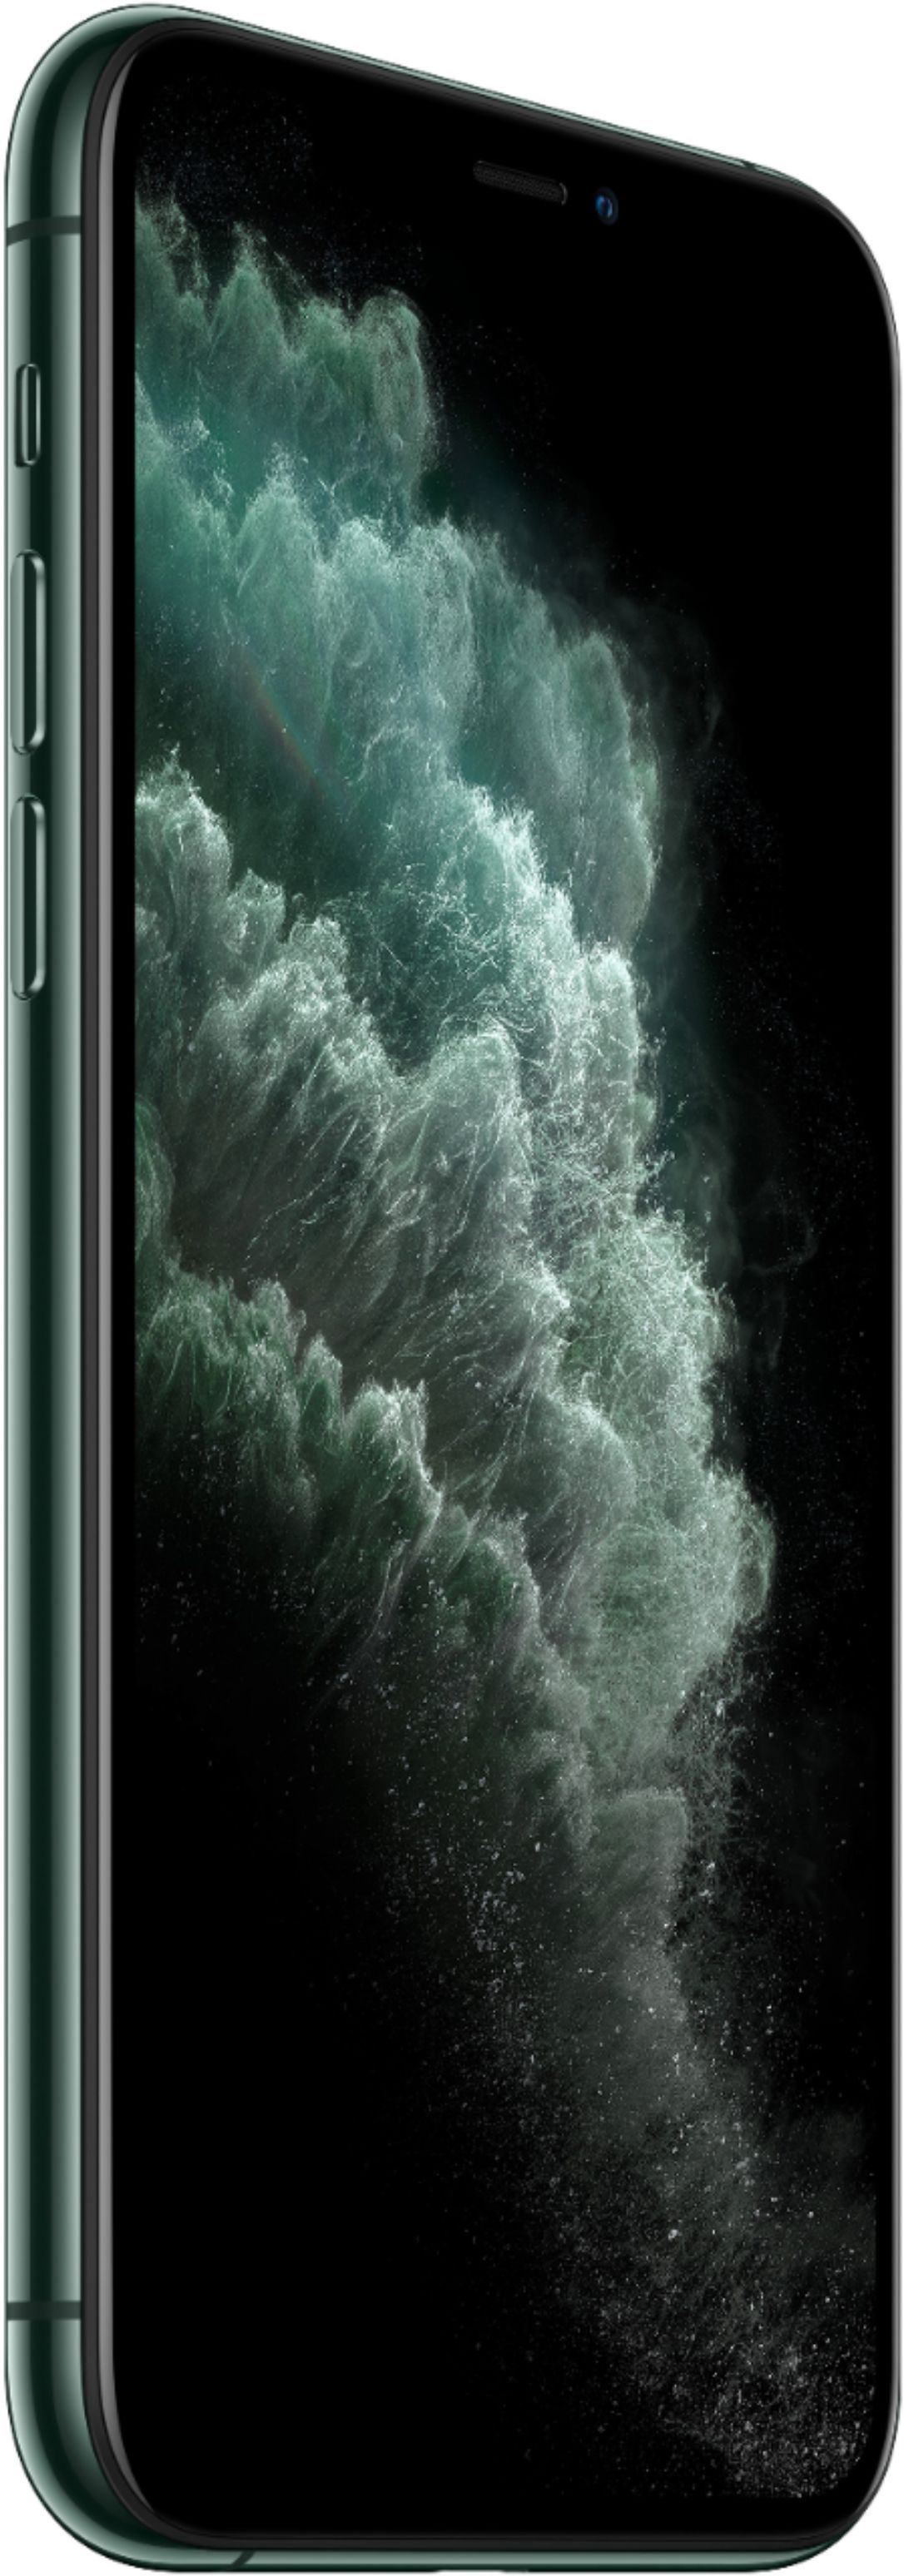 Best Buy: Apple iPhone 11 Pro 256GB Midnight Green (Verizon) MWCQ2LL/A